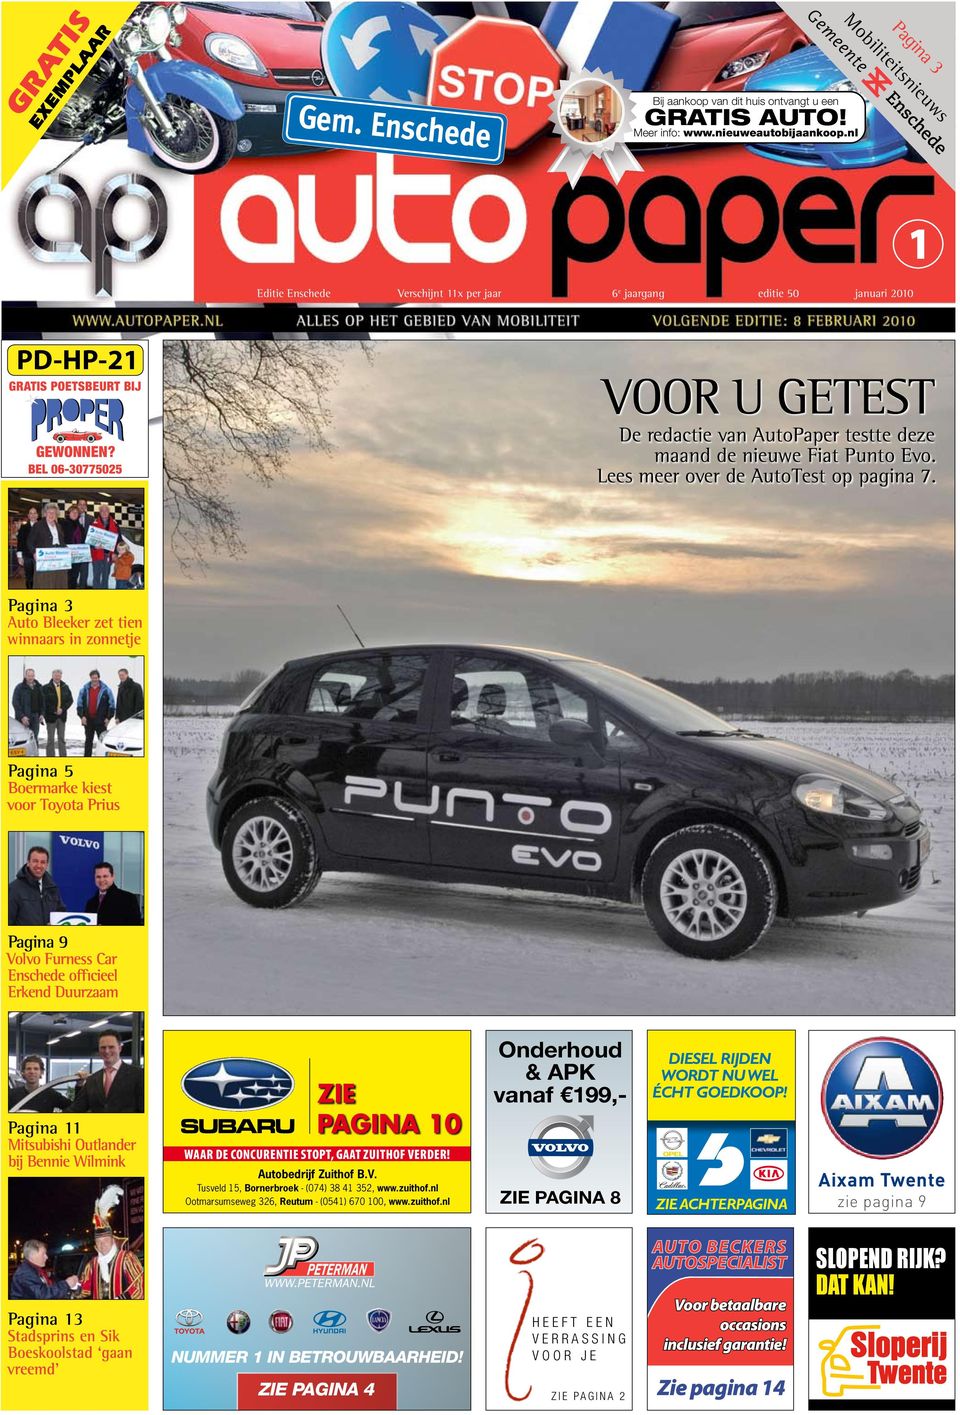 bel 06-30775025 Voor u getest De redactie van AutoPaper testte deze maand de nieuwe Fiat Punto Evo. Lees meer over de AutoTest op pagina 7.